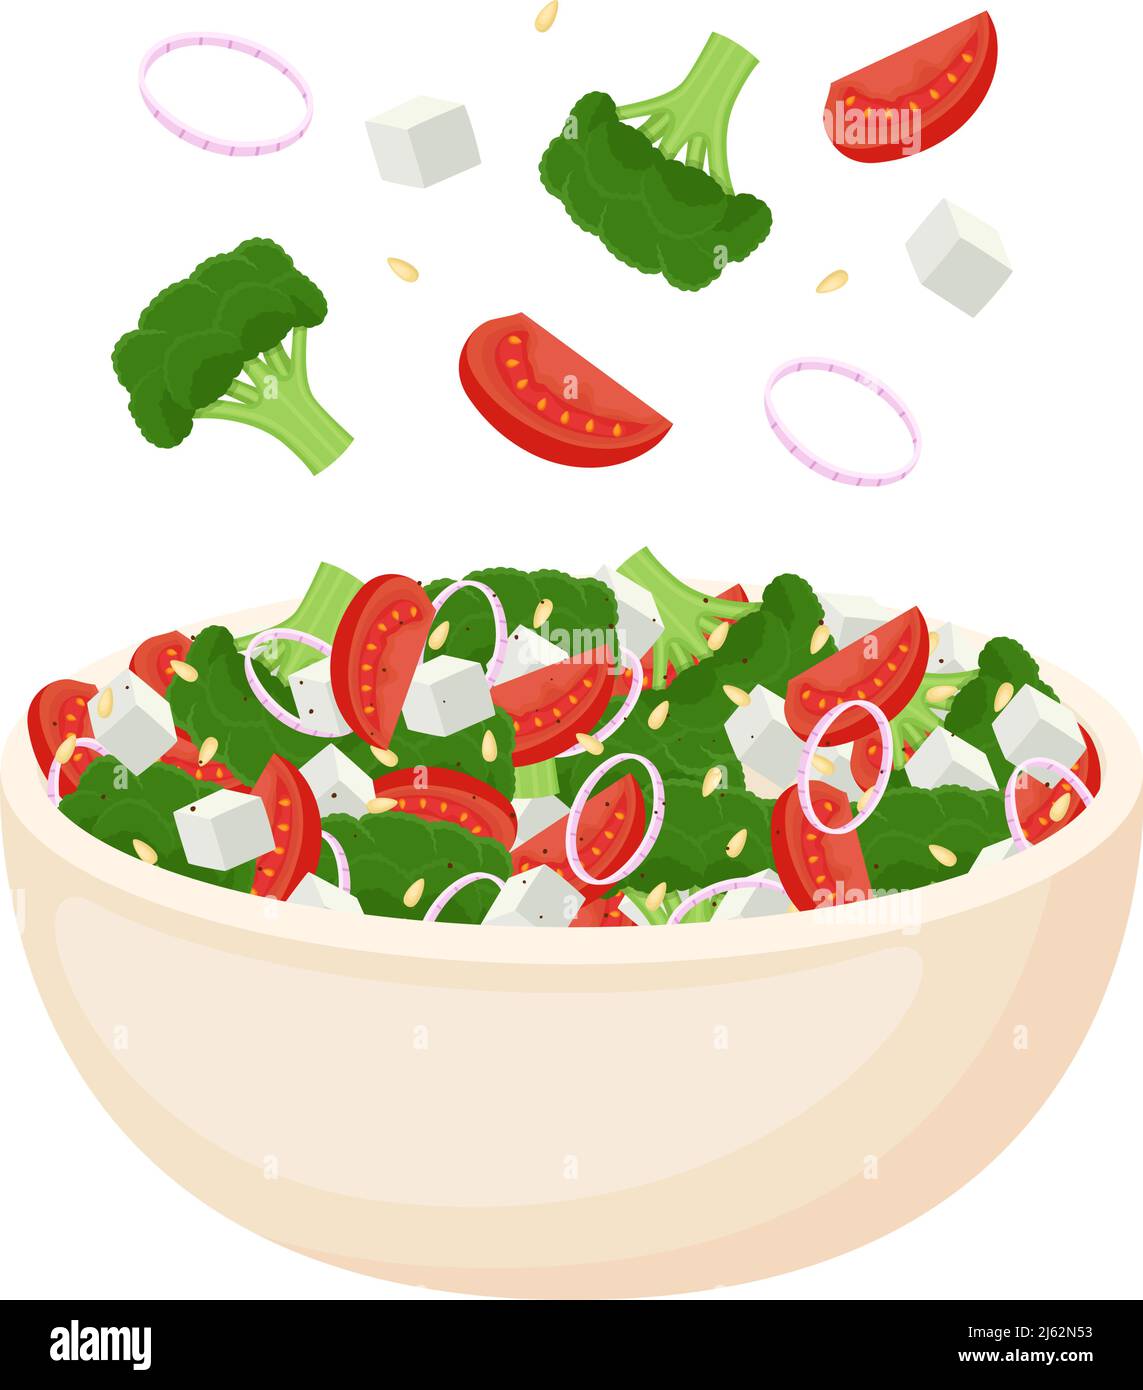 Salade maison de légumes frais, salade de fromage et pignons. Une alimentation saine. Repas végétarien. Illustration vectorielle Illustration de Vecteur